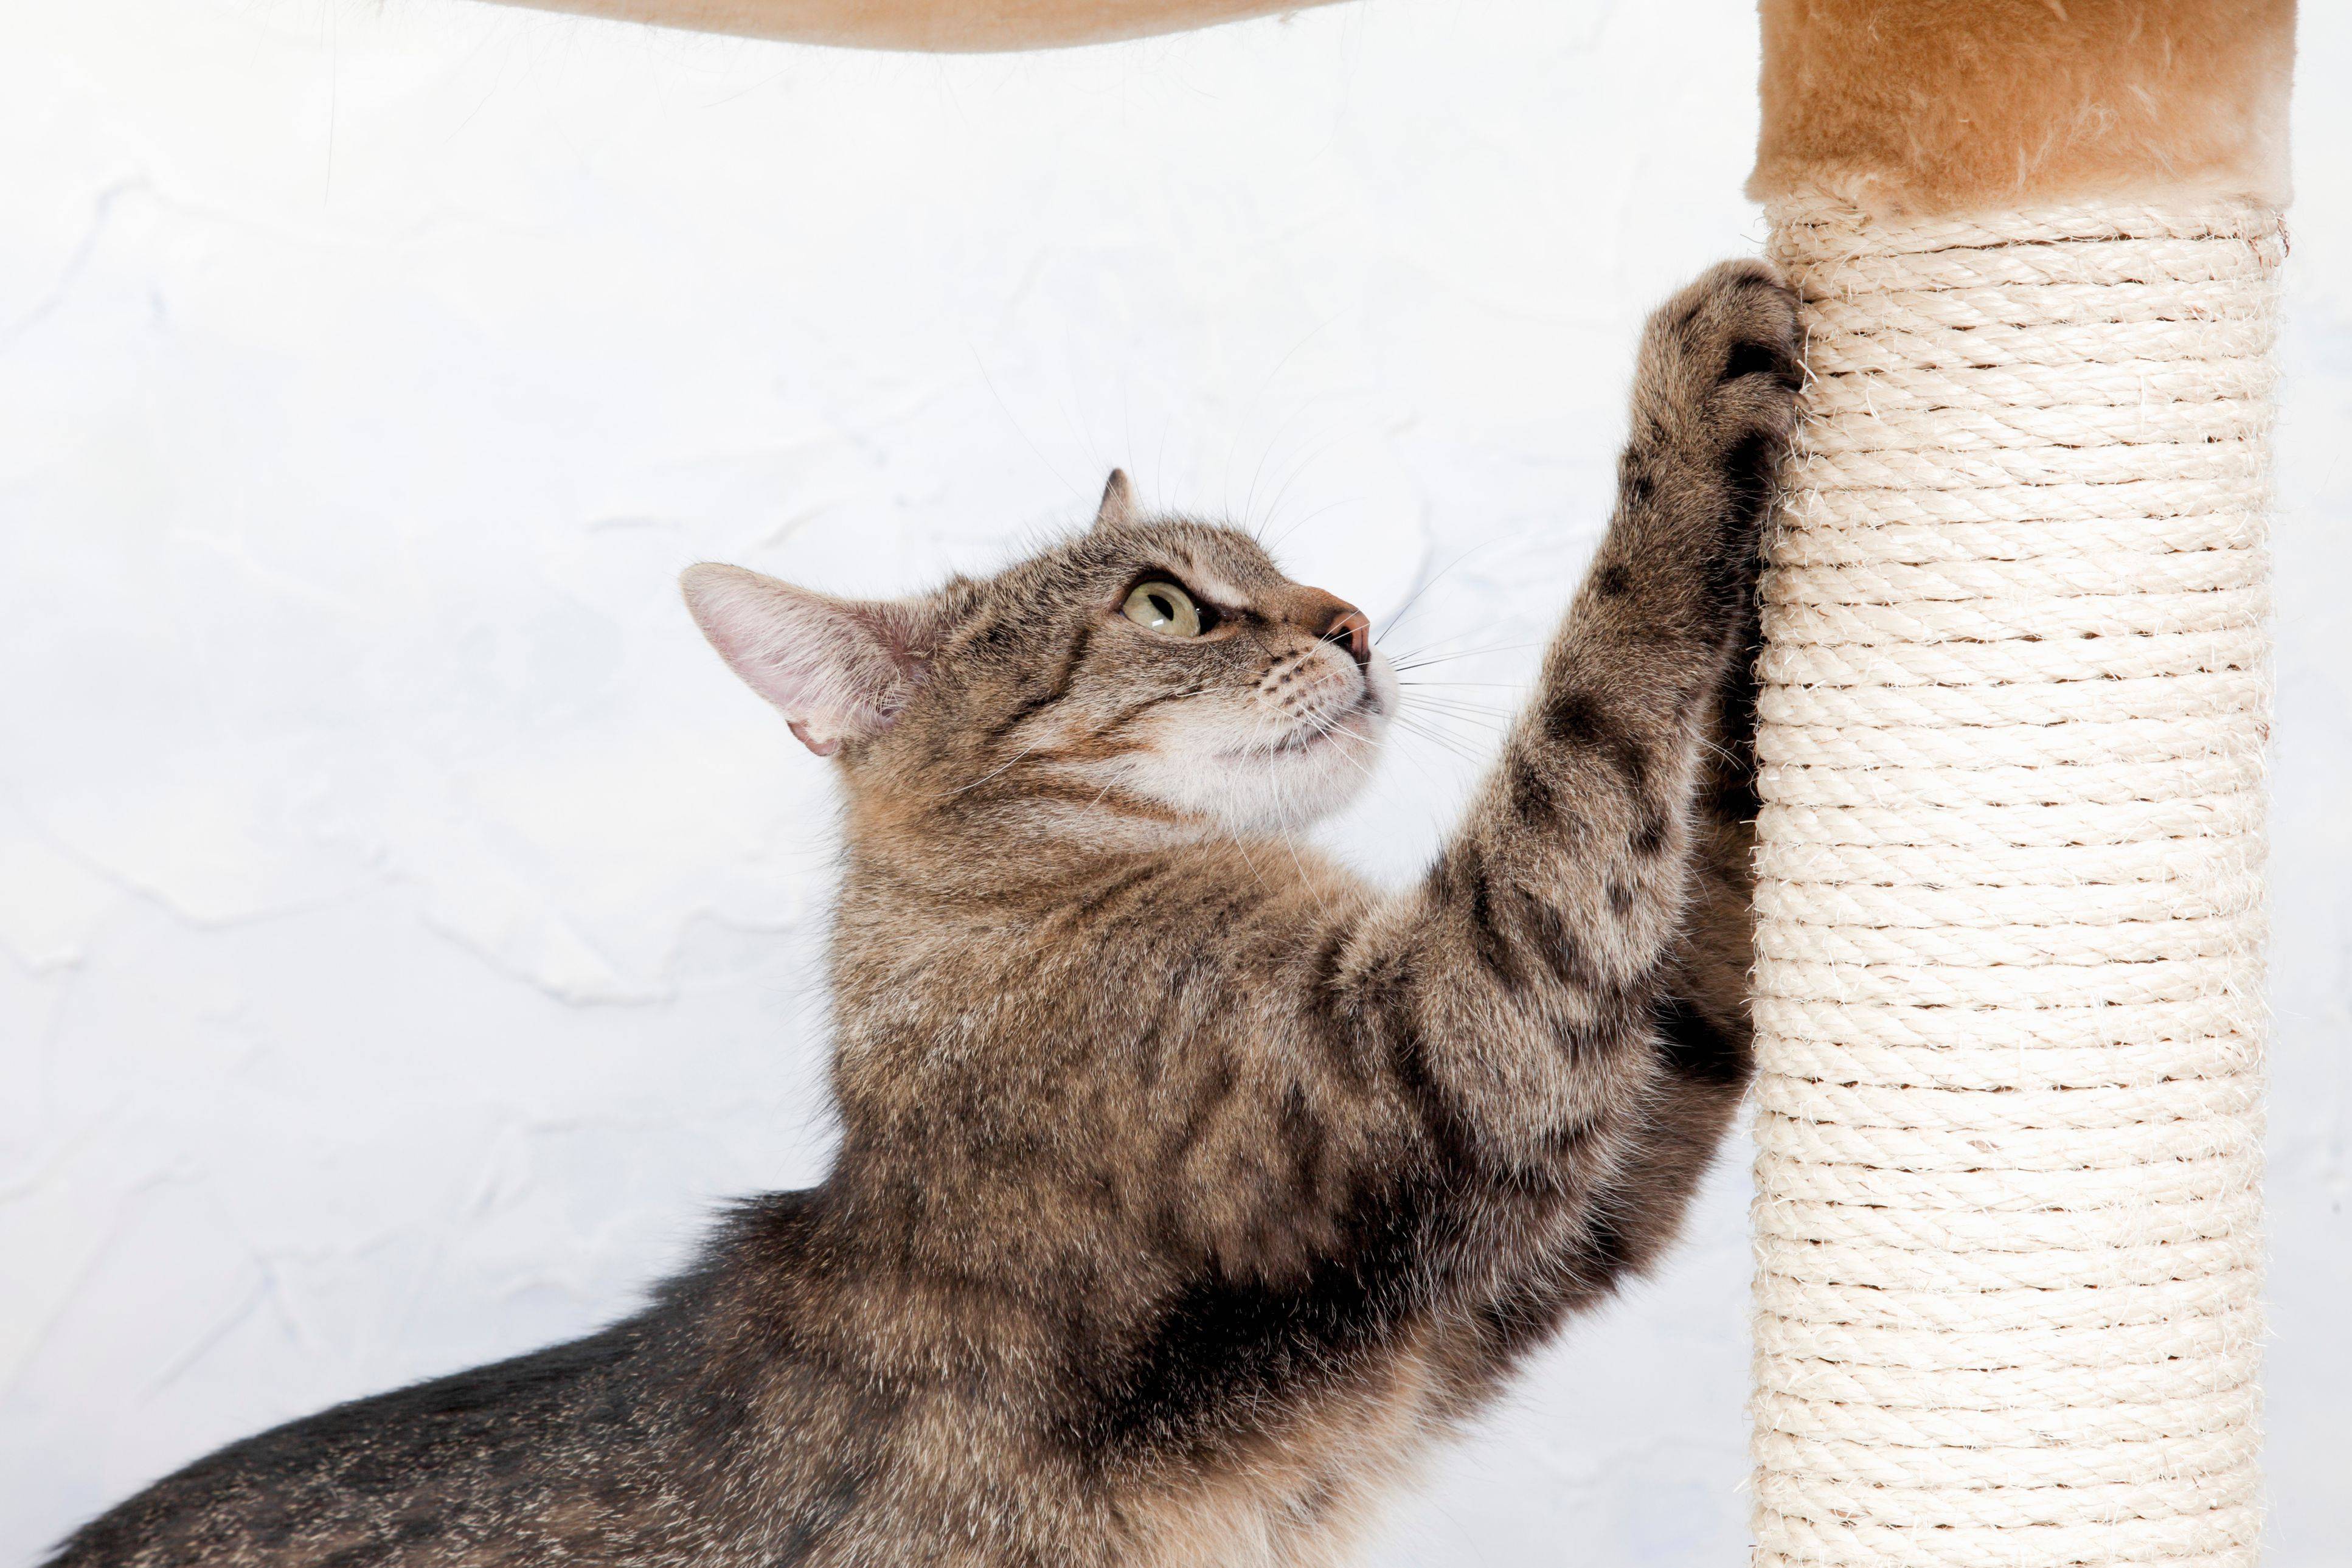 Как отучить кошку драть обои и мебель? лайфхаки от эксперта: новости, животные, кошка, кошки, мебель, дрессировка, поведение, домашние животные